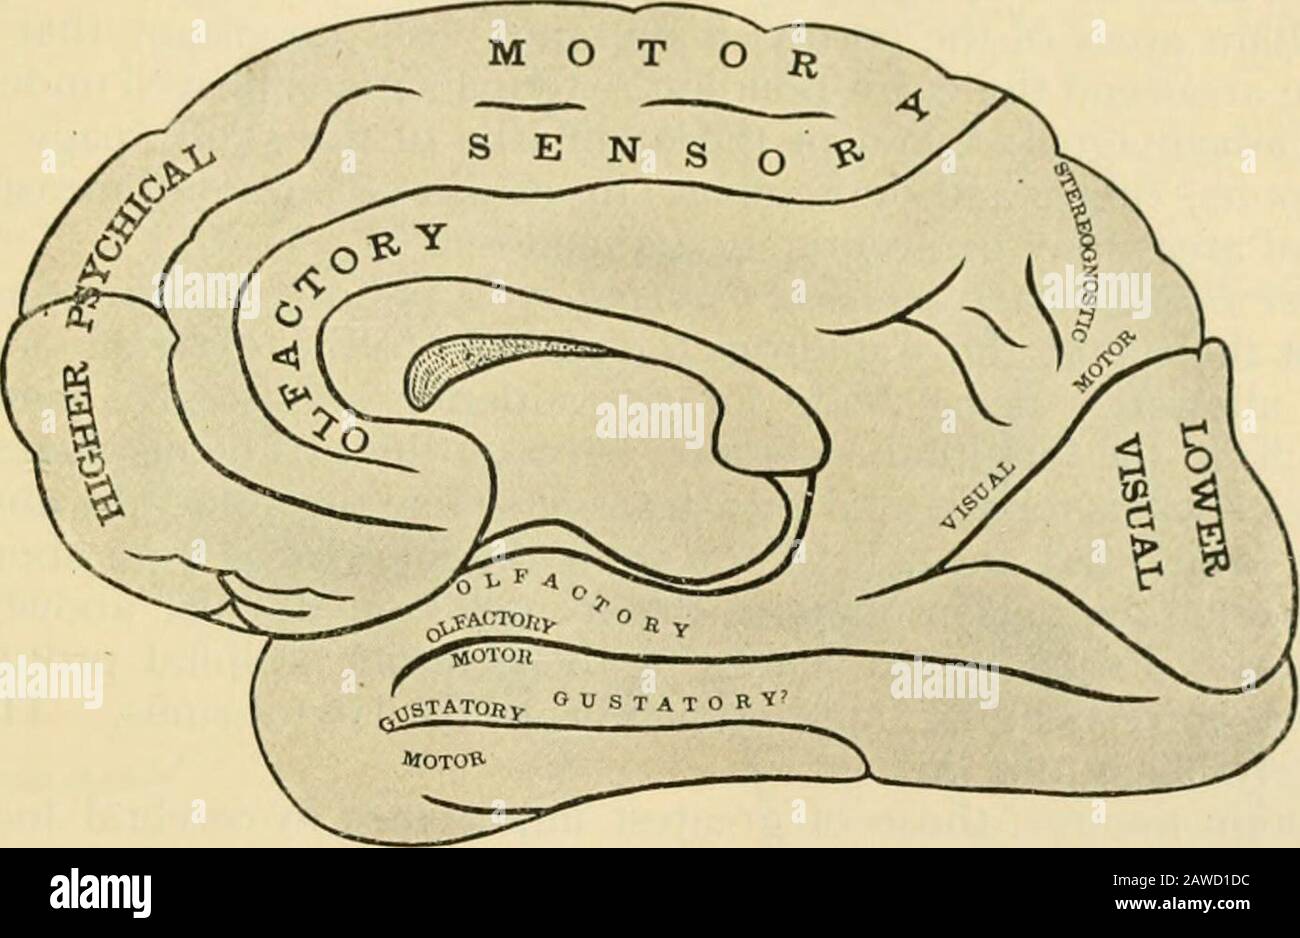 Anatomia umana, compresa la struttura e lo sviluppo e considerazioni pratiche. Dalla parte posteriore della terza conxoluzione frontale rij^ht, l)ut a sinistra è probabilmente il centro principale. Nella prima conxoluzione temporale sinistra è l'aiuiiorv ccnlrc per il parlato, una lesicjiiof che porta ad una perdita di memoria per i suoni di parola, anche se le audizioni possono essere indisturbate. Il centro per la memoria di pri)ited -cord è probabilmente a sinistra an i,^ular i^yrus ;e una lesione tliere probabilmente causa una perdita della capacità di leggere o tf) comprensive lanouatie scritte, anche se il comune sij^ht è undisturbare Foto Stock